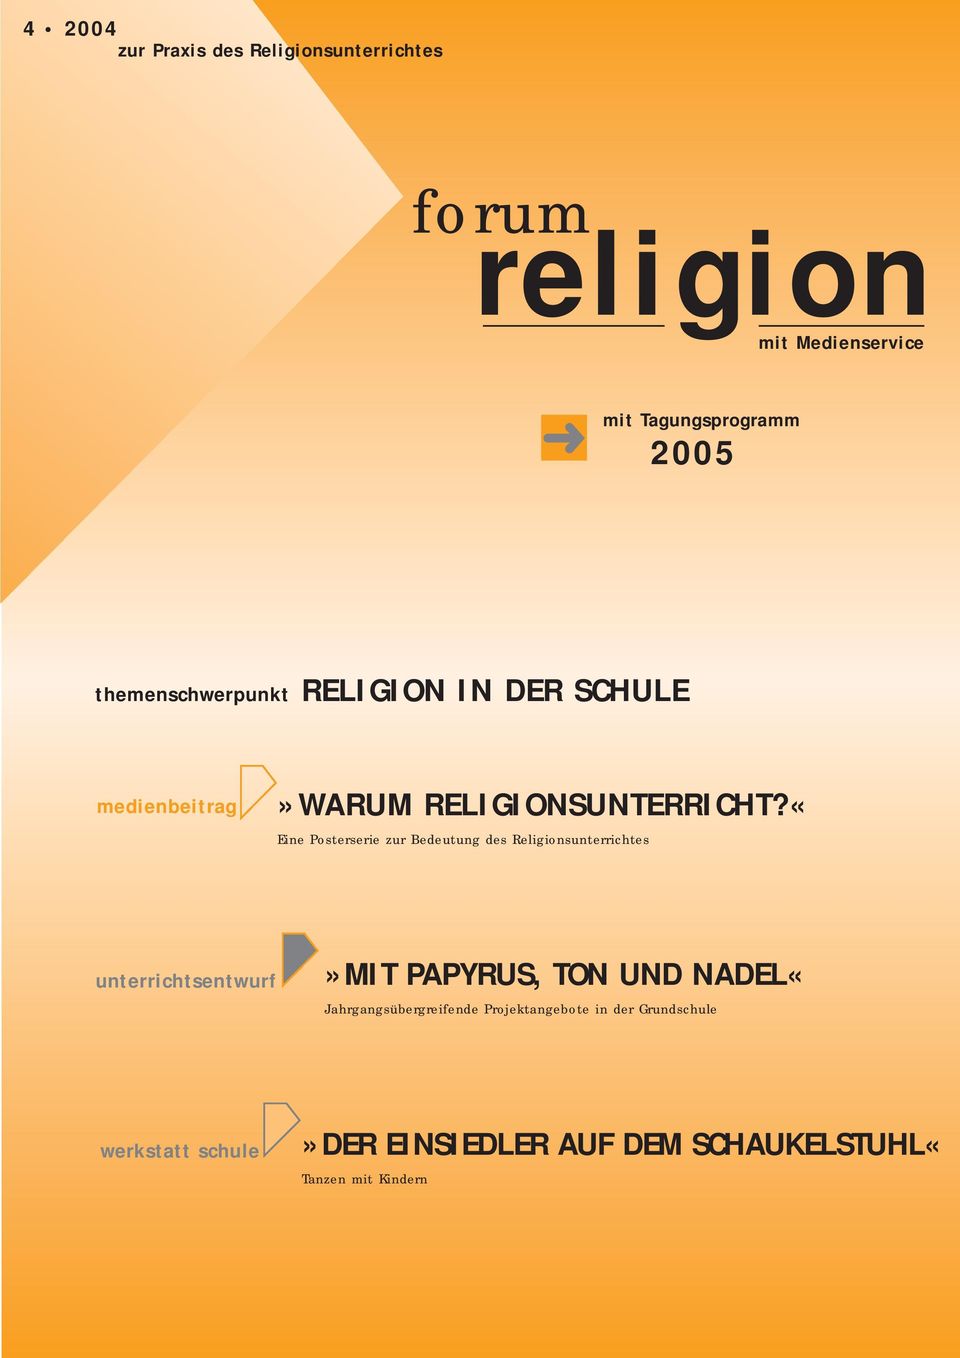 «Eine Posterserie zur Bedeutung des Religionsunterrichtes unterrichtsentwurf»mit PAPYRUS, TON UND